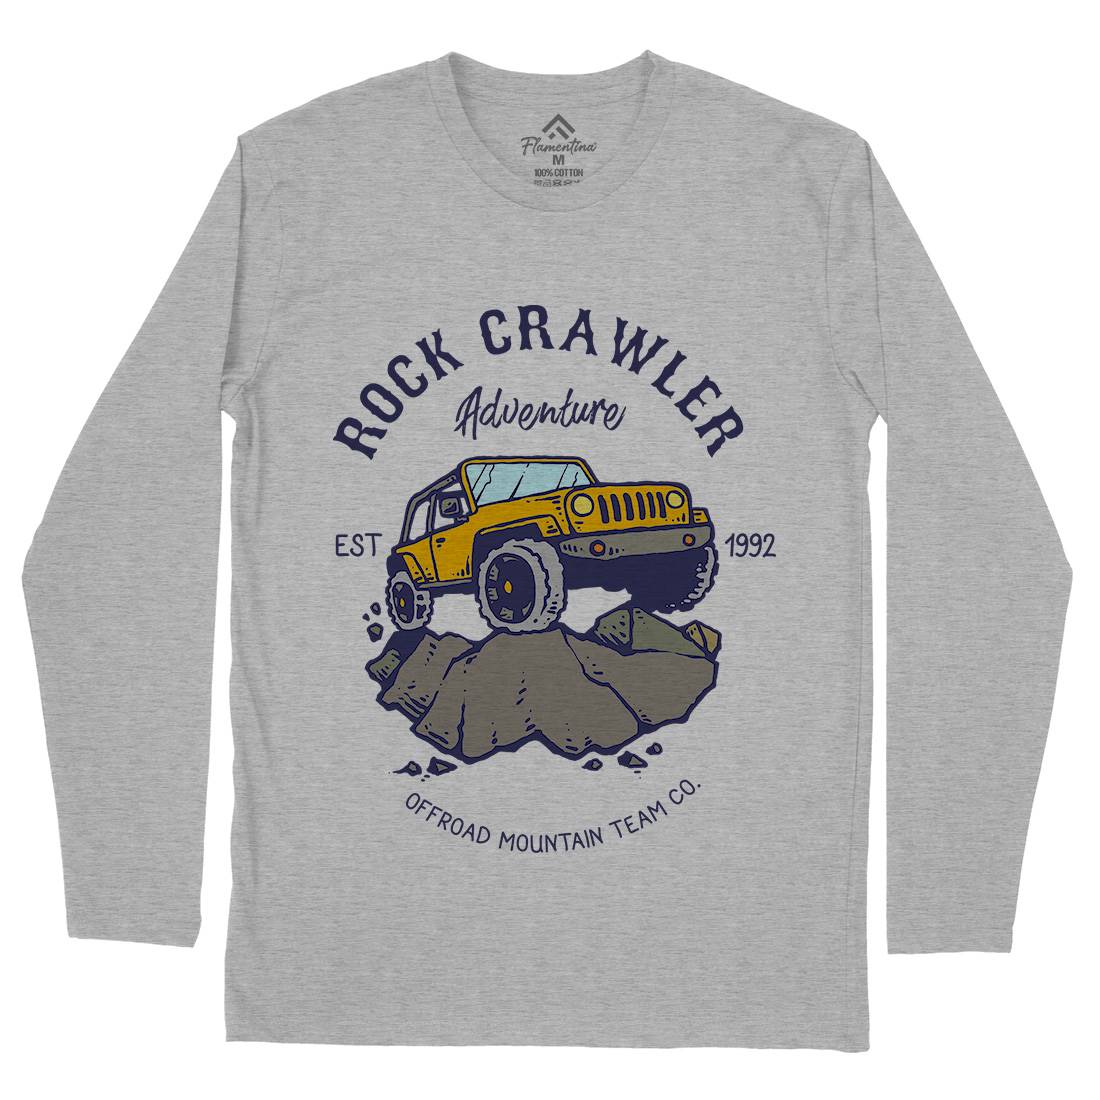 Rock Crawler Adventure Mens Long Sleeve T-Shirt Cars C763